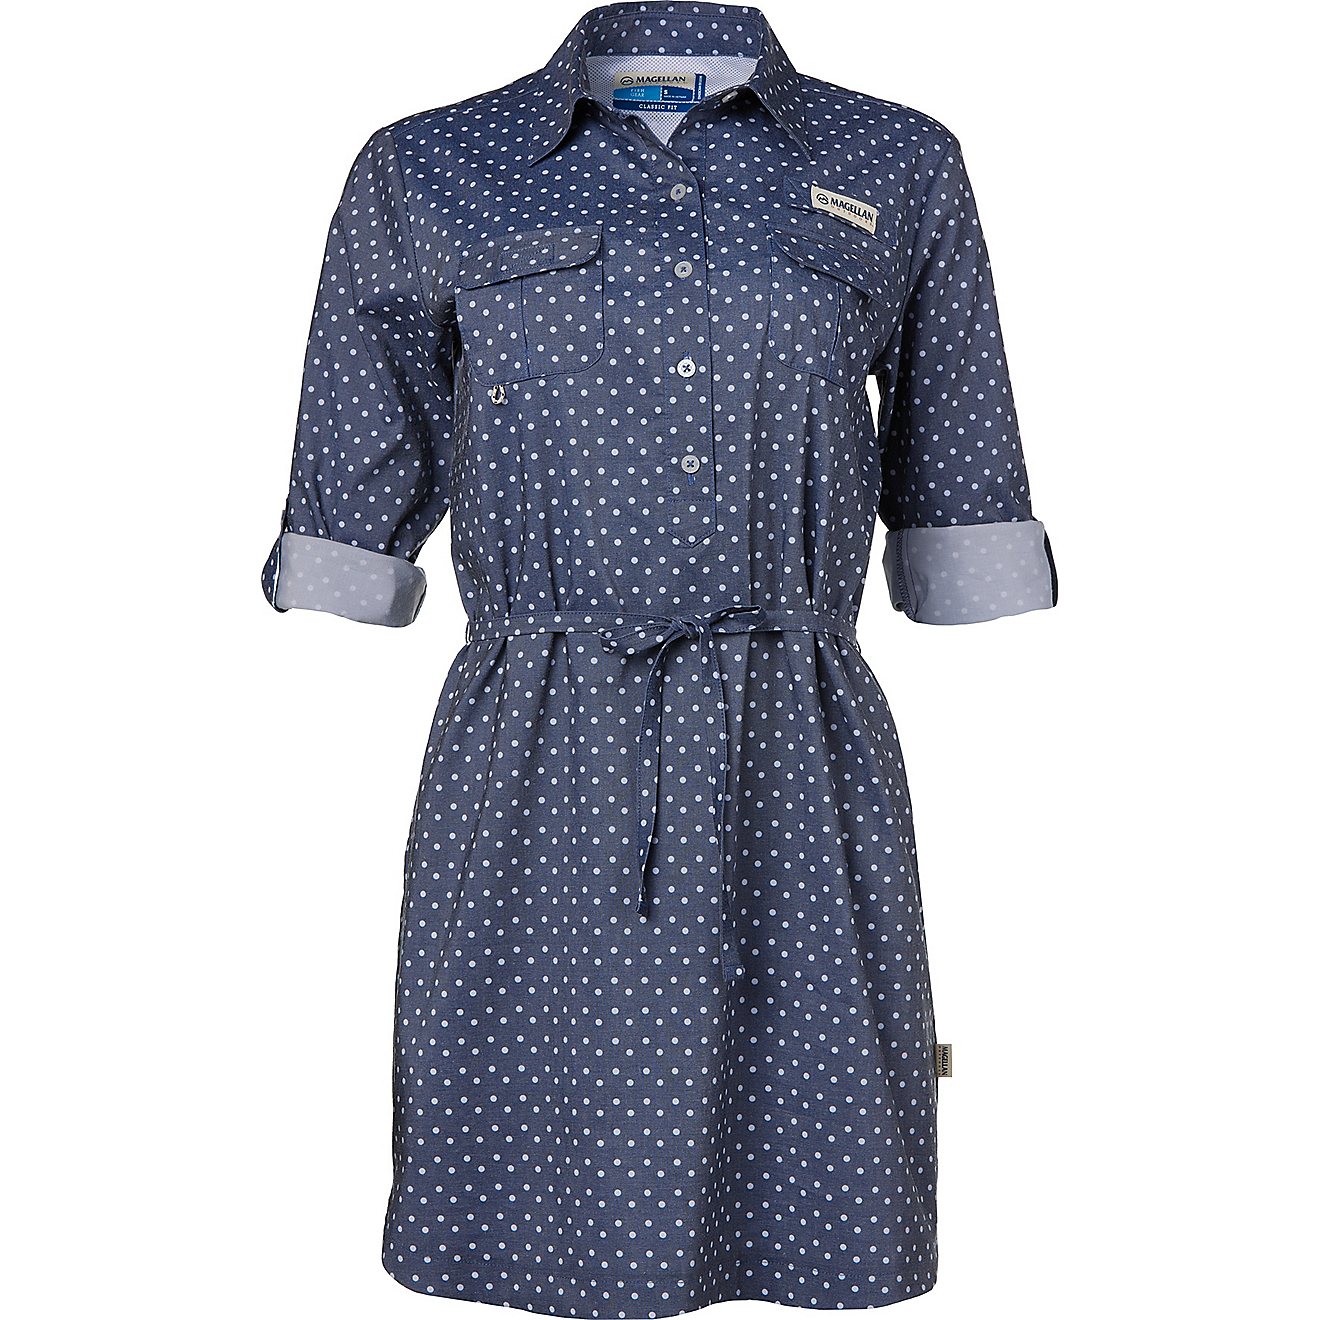 Magellan Outdoors Women's Southern Summer Print Long Sleeve Shirt Dress                                                          - view number 3